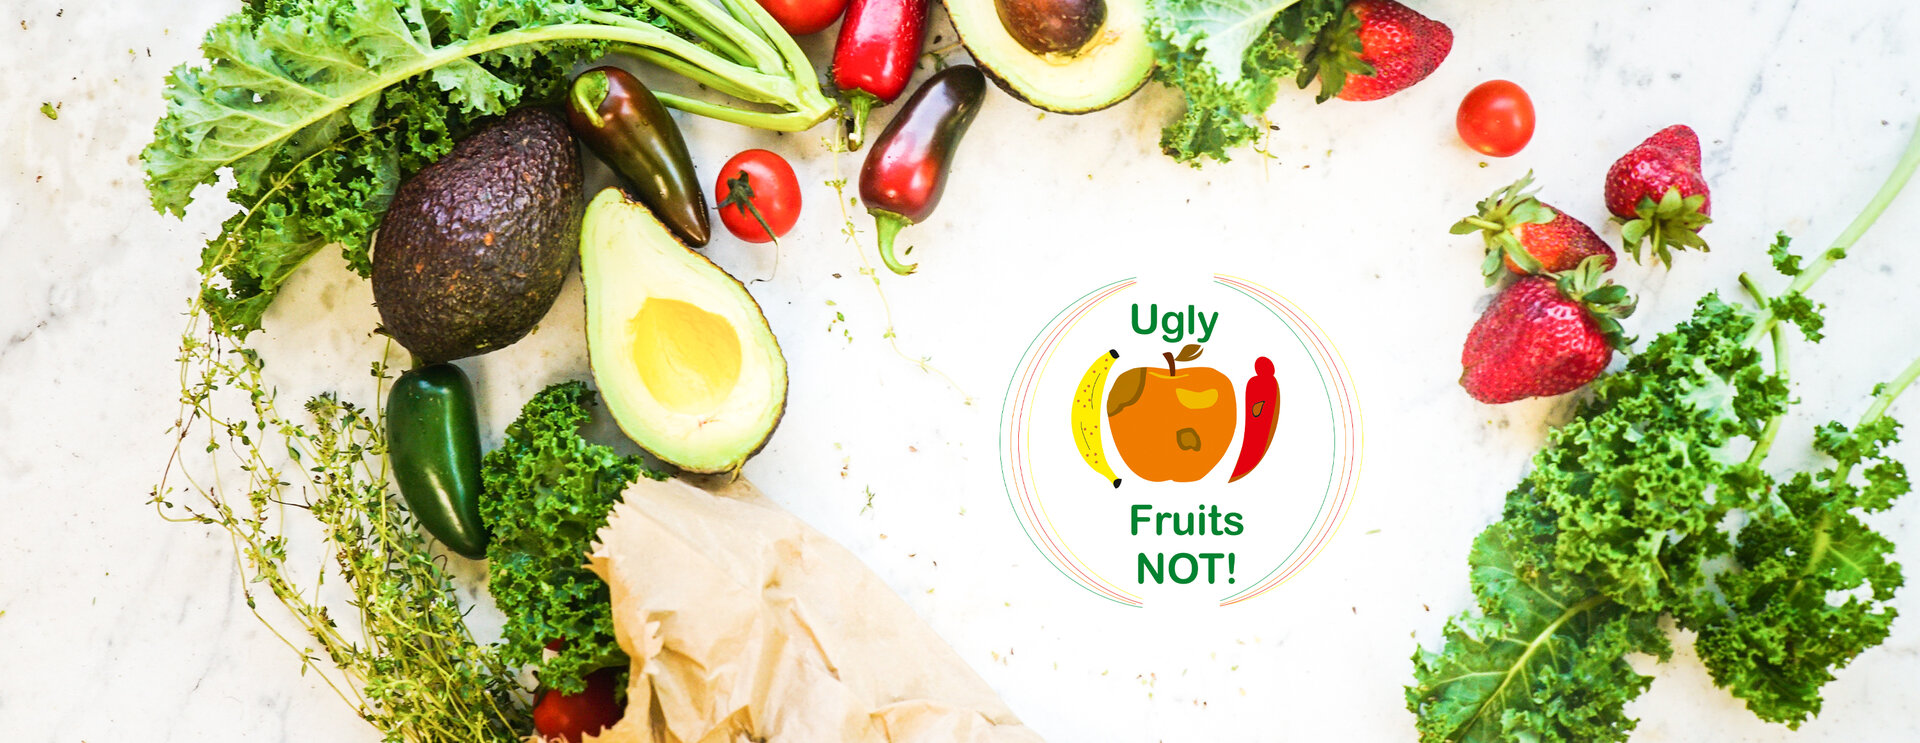 Foto de legumes e frutas. No meio da foto está o logotipo do projeto, que mostra sub-perfeito frutas e legumes e as palavras feio frutas not